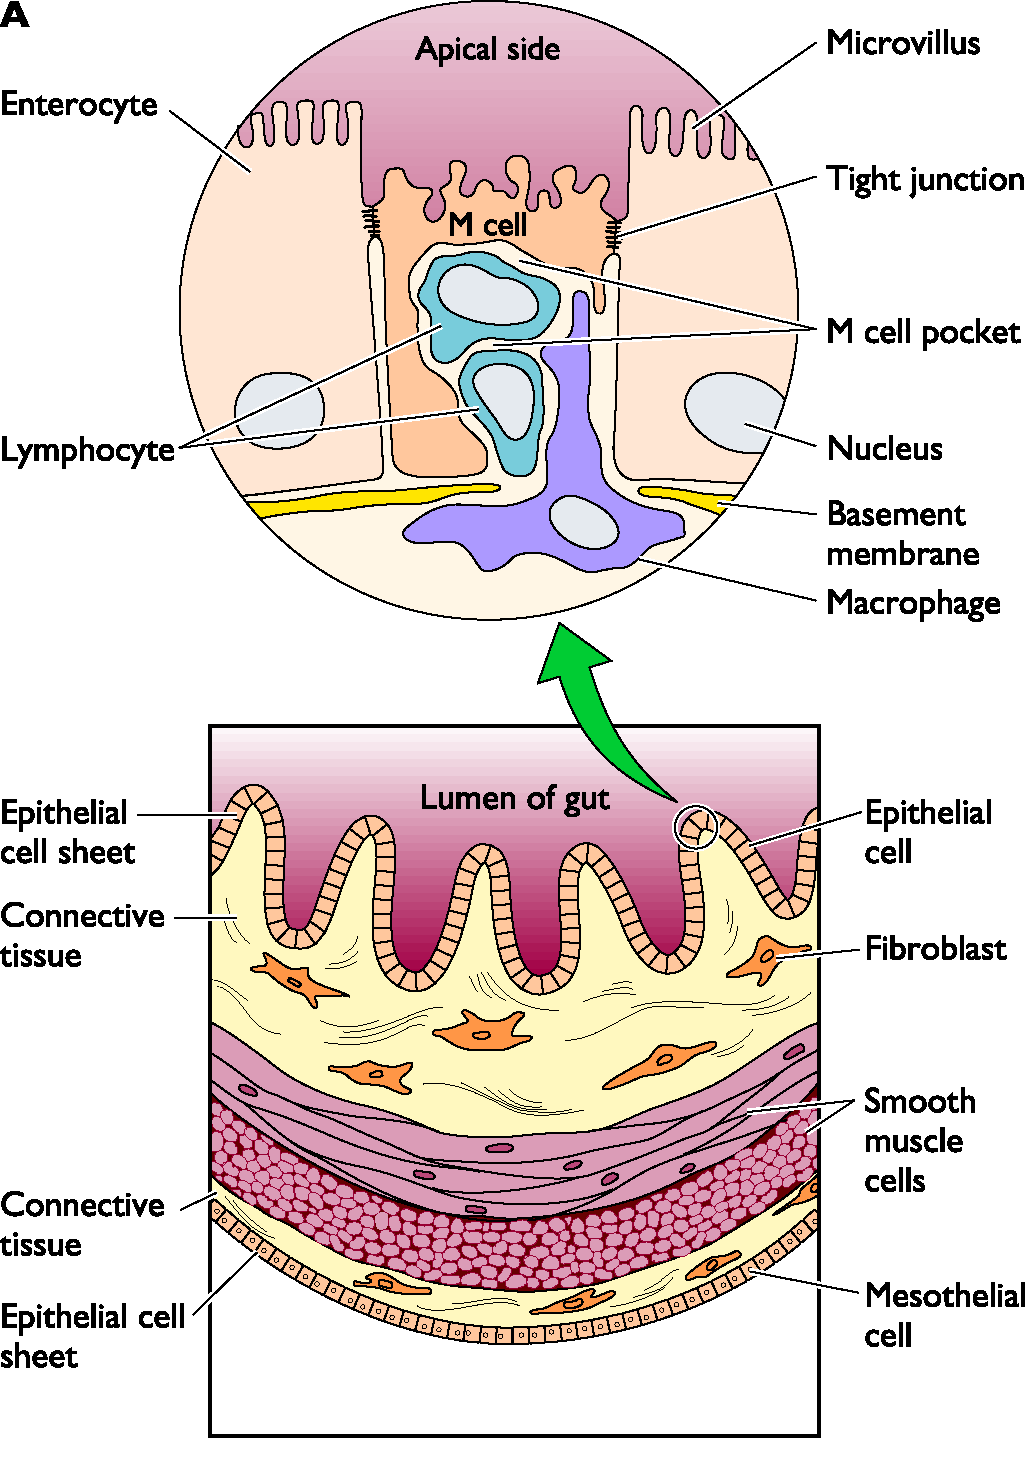 celulas M - carreadoras na via secretória de IgA por transcitose.